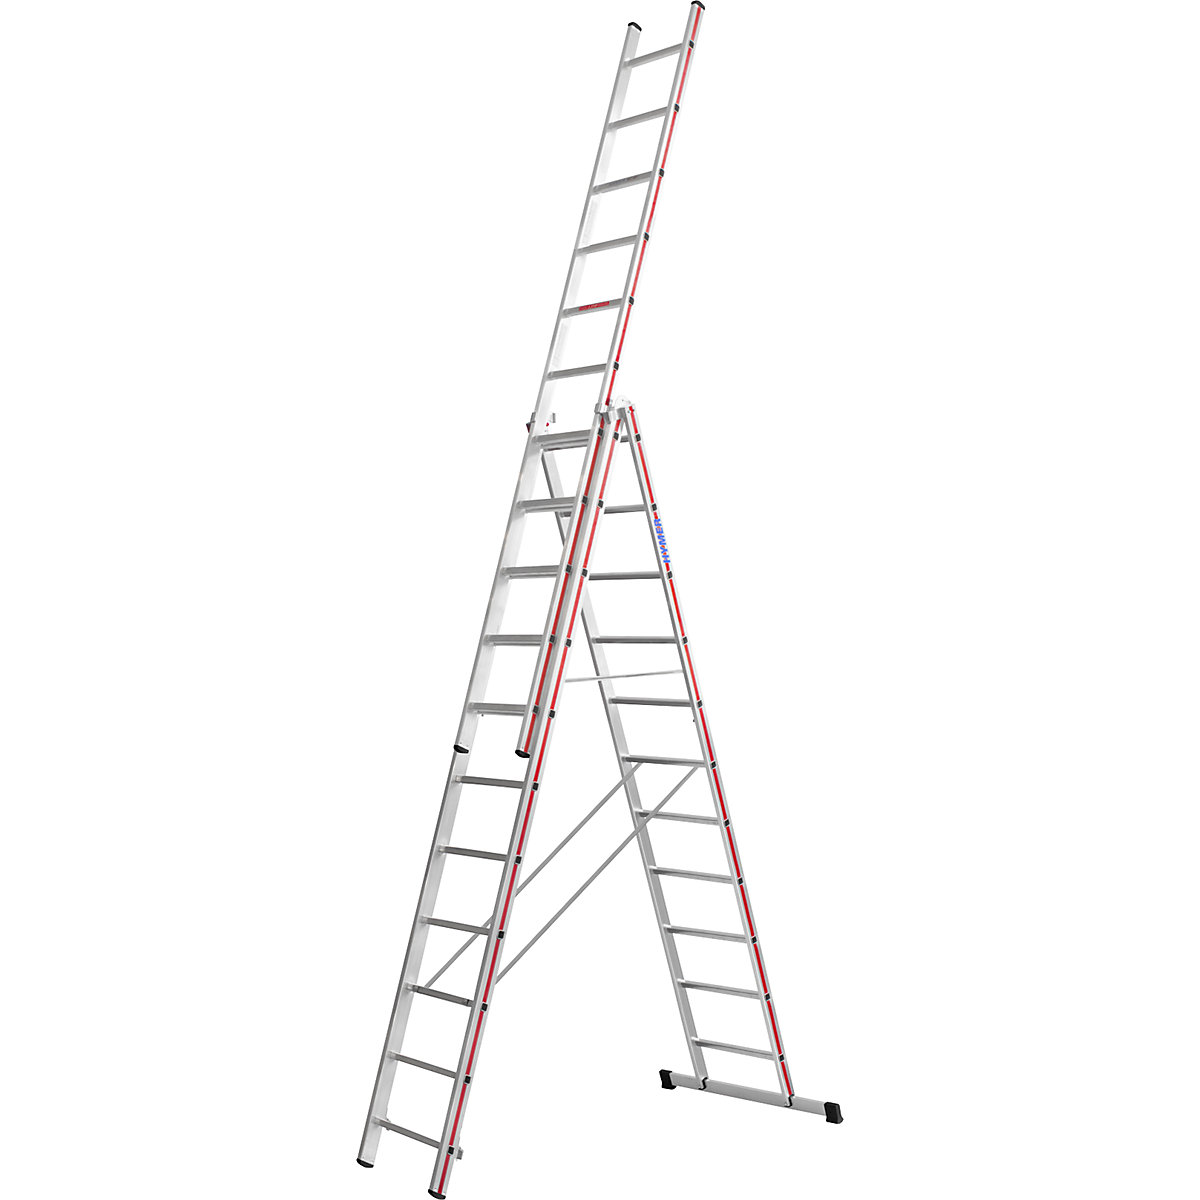 Hliníkový víceúčelový žebřík – HYMER, provedení Profi, 3 x 11 příčlí, max. pracovní výška 8,49 m